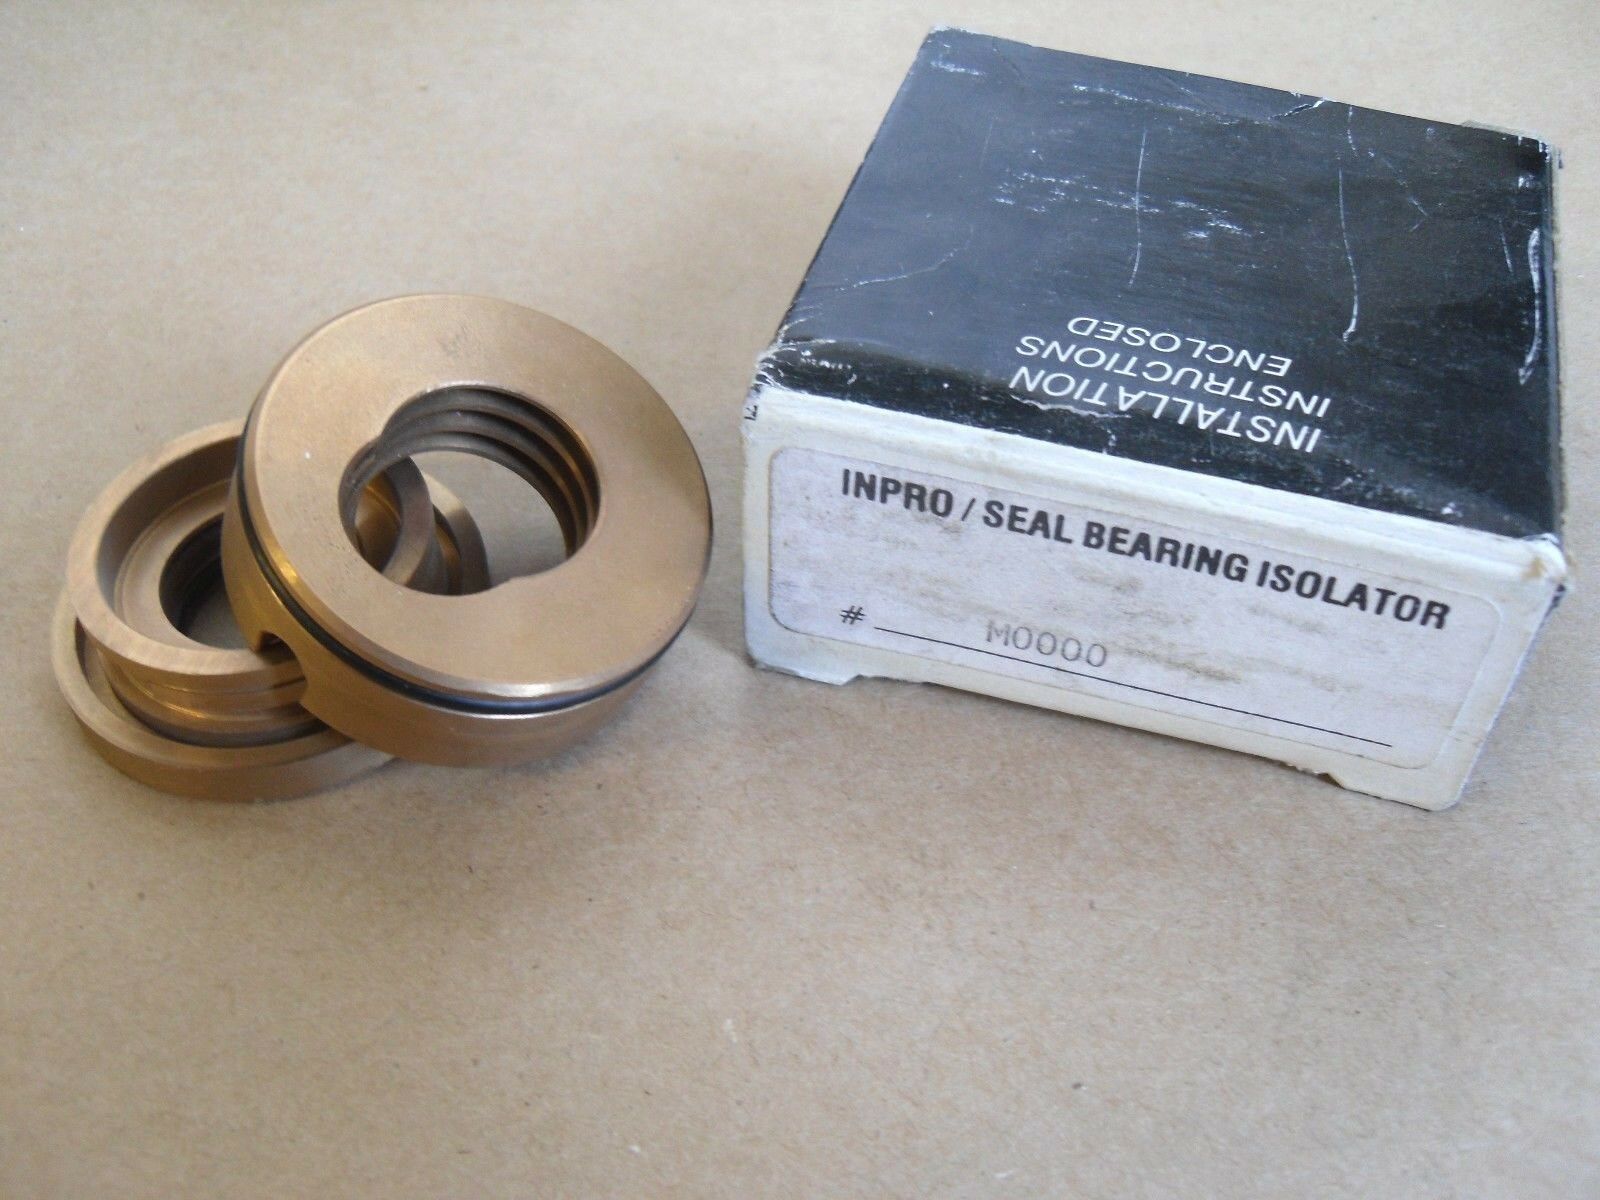 inpro bearing isolator catalog